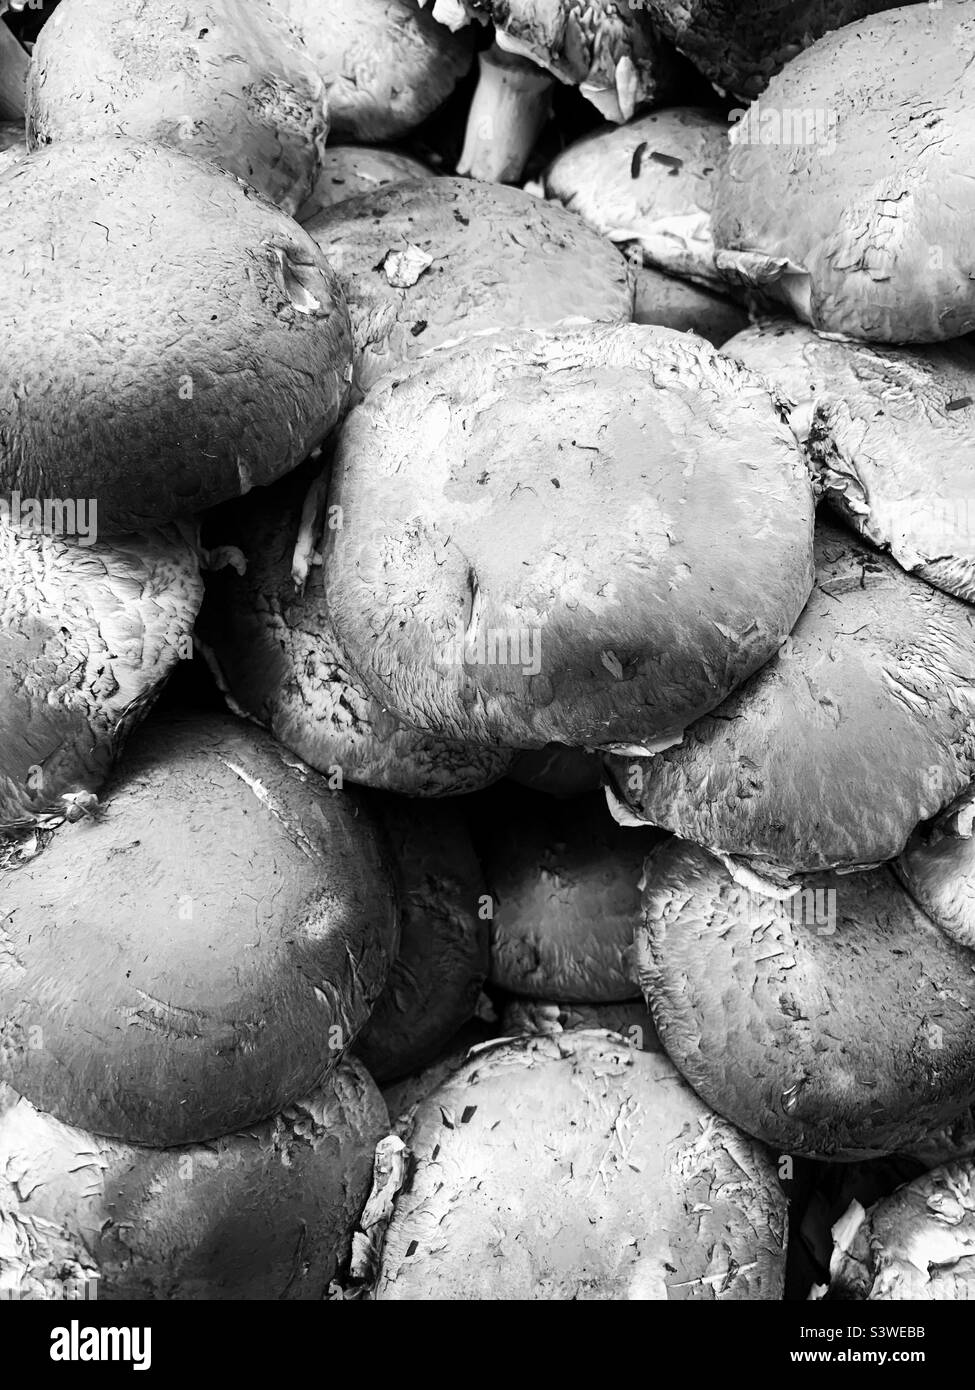 Stupendi funghi cremini e cappellini in bianco e nero. Foto Stock